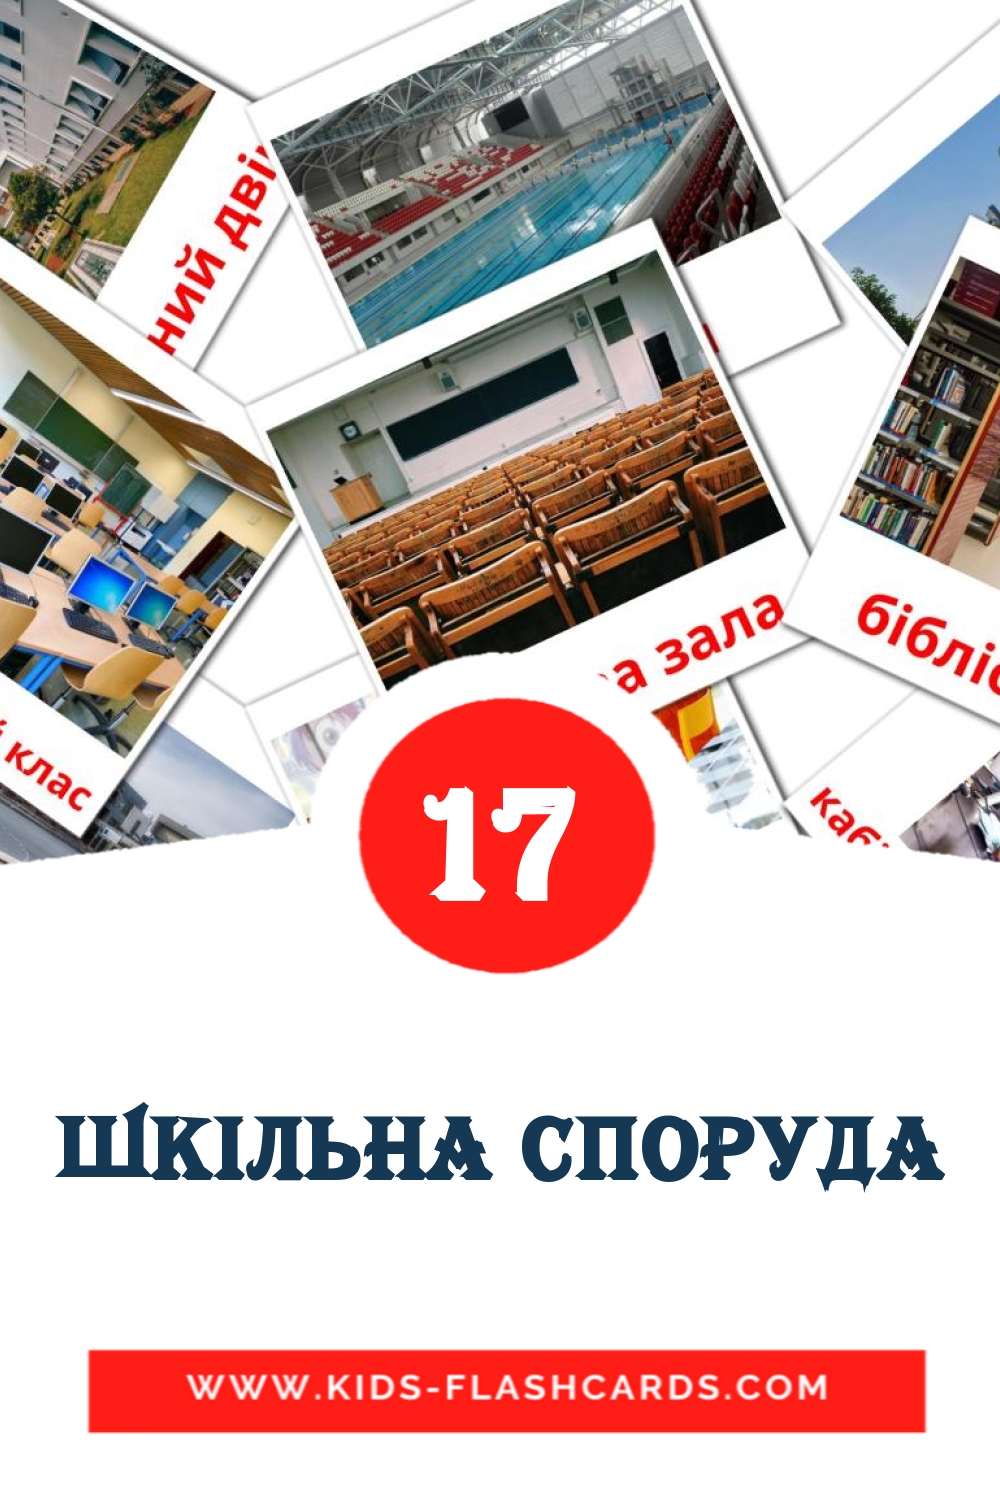 17 Шкiльна споруда fotokaarten voor kleuters in het oekraïens